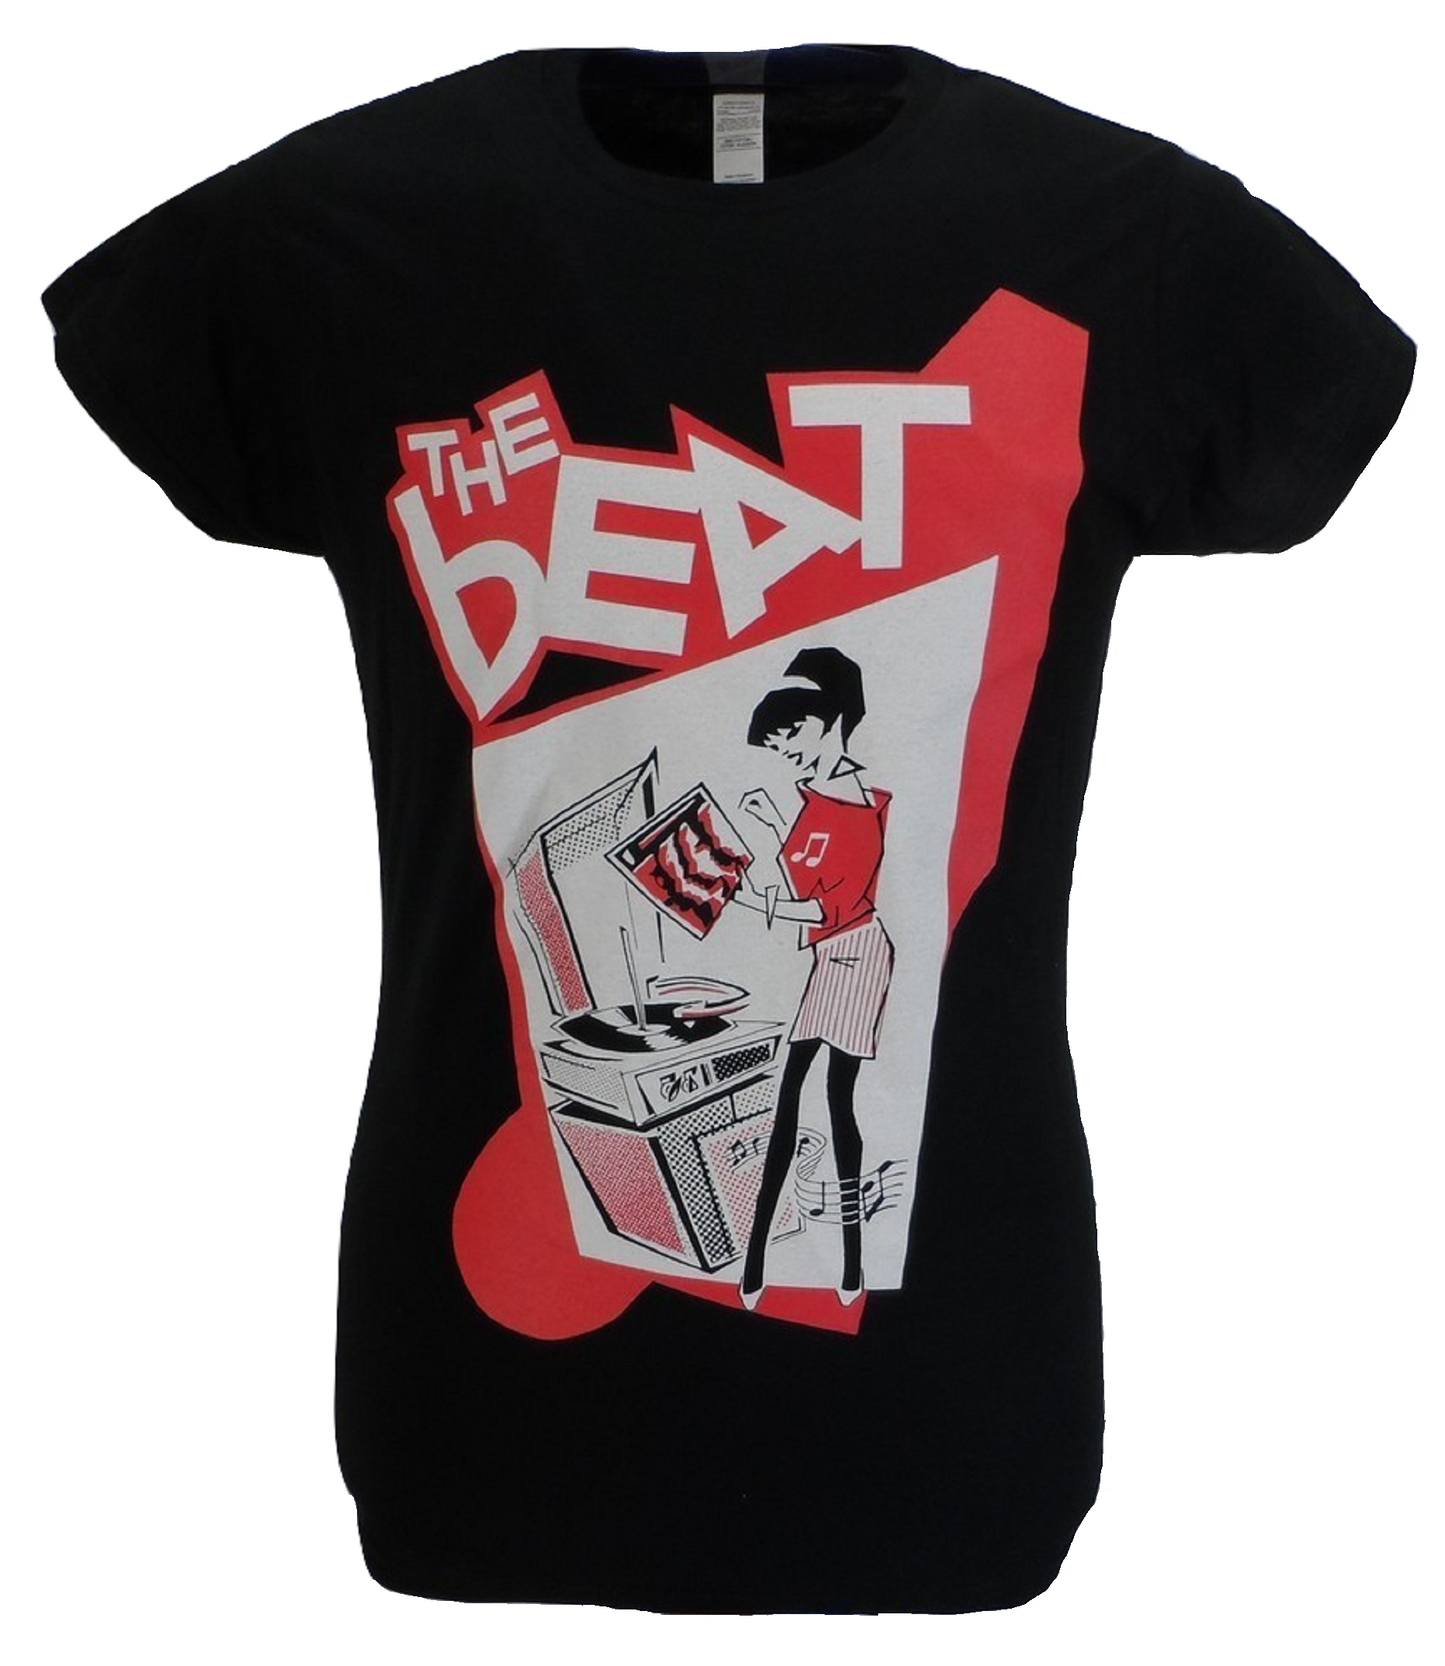 Maglietta nera da donna con licenza ufficiale The Beat giradischi